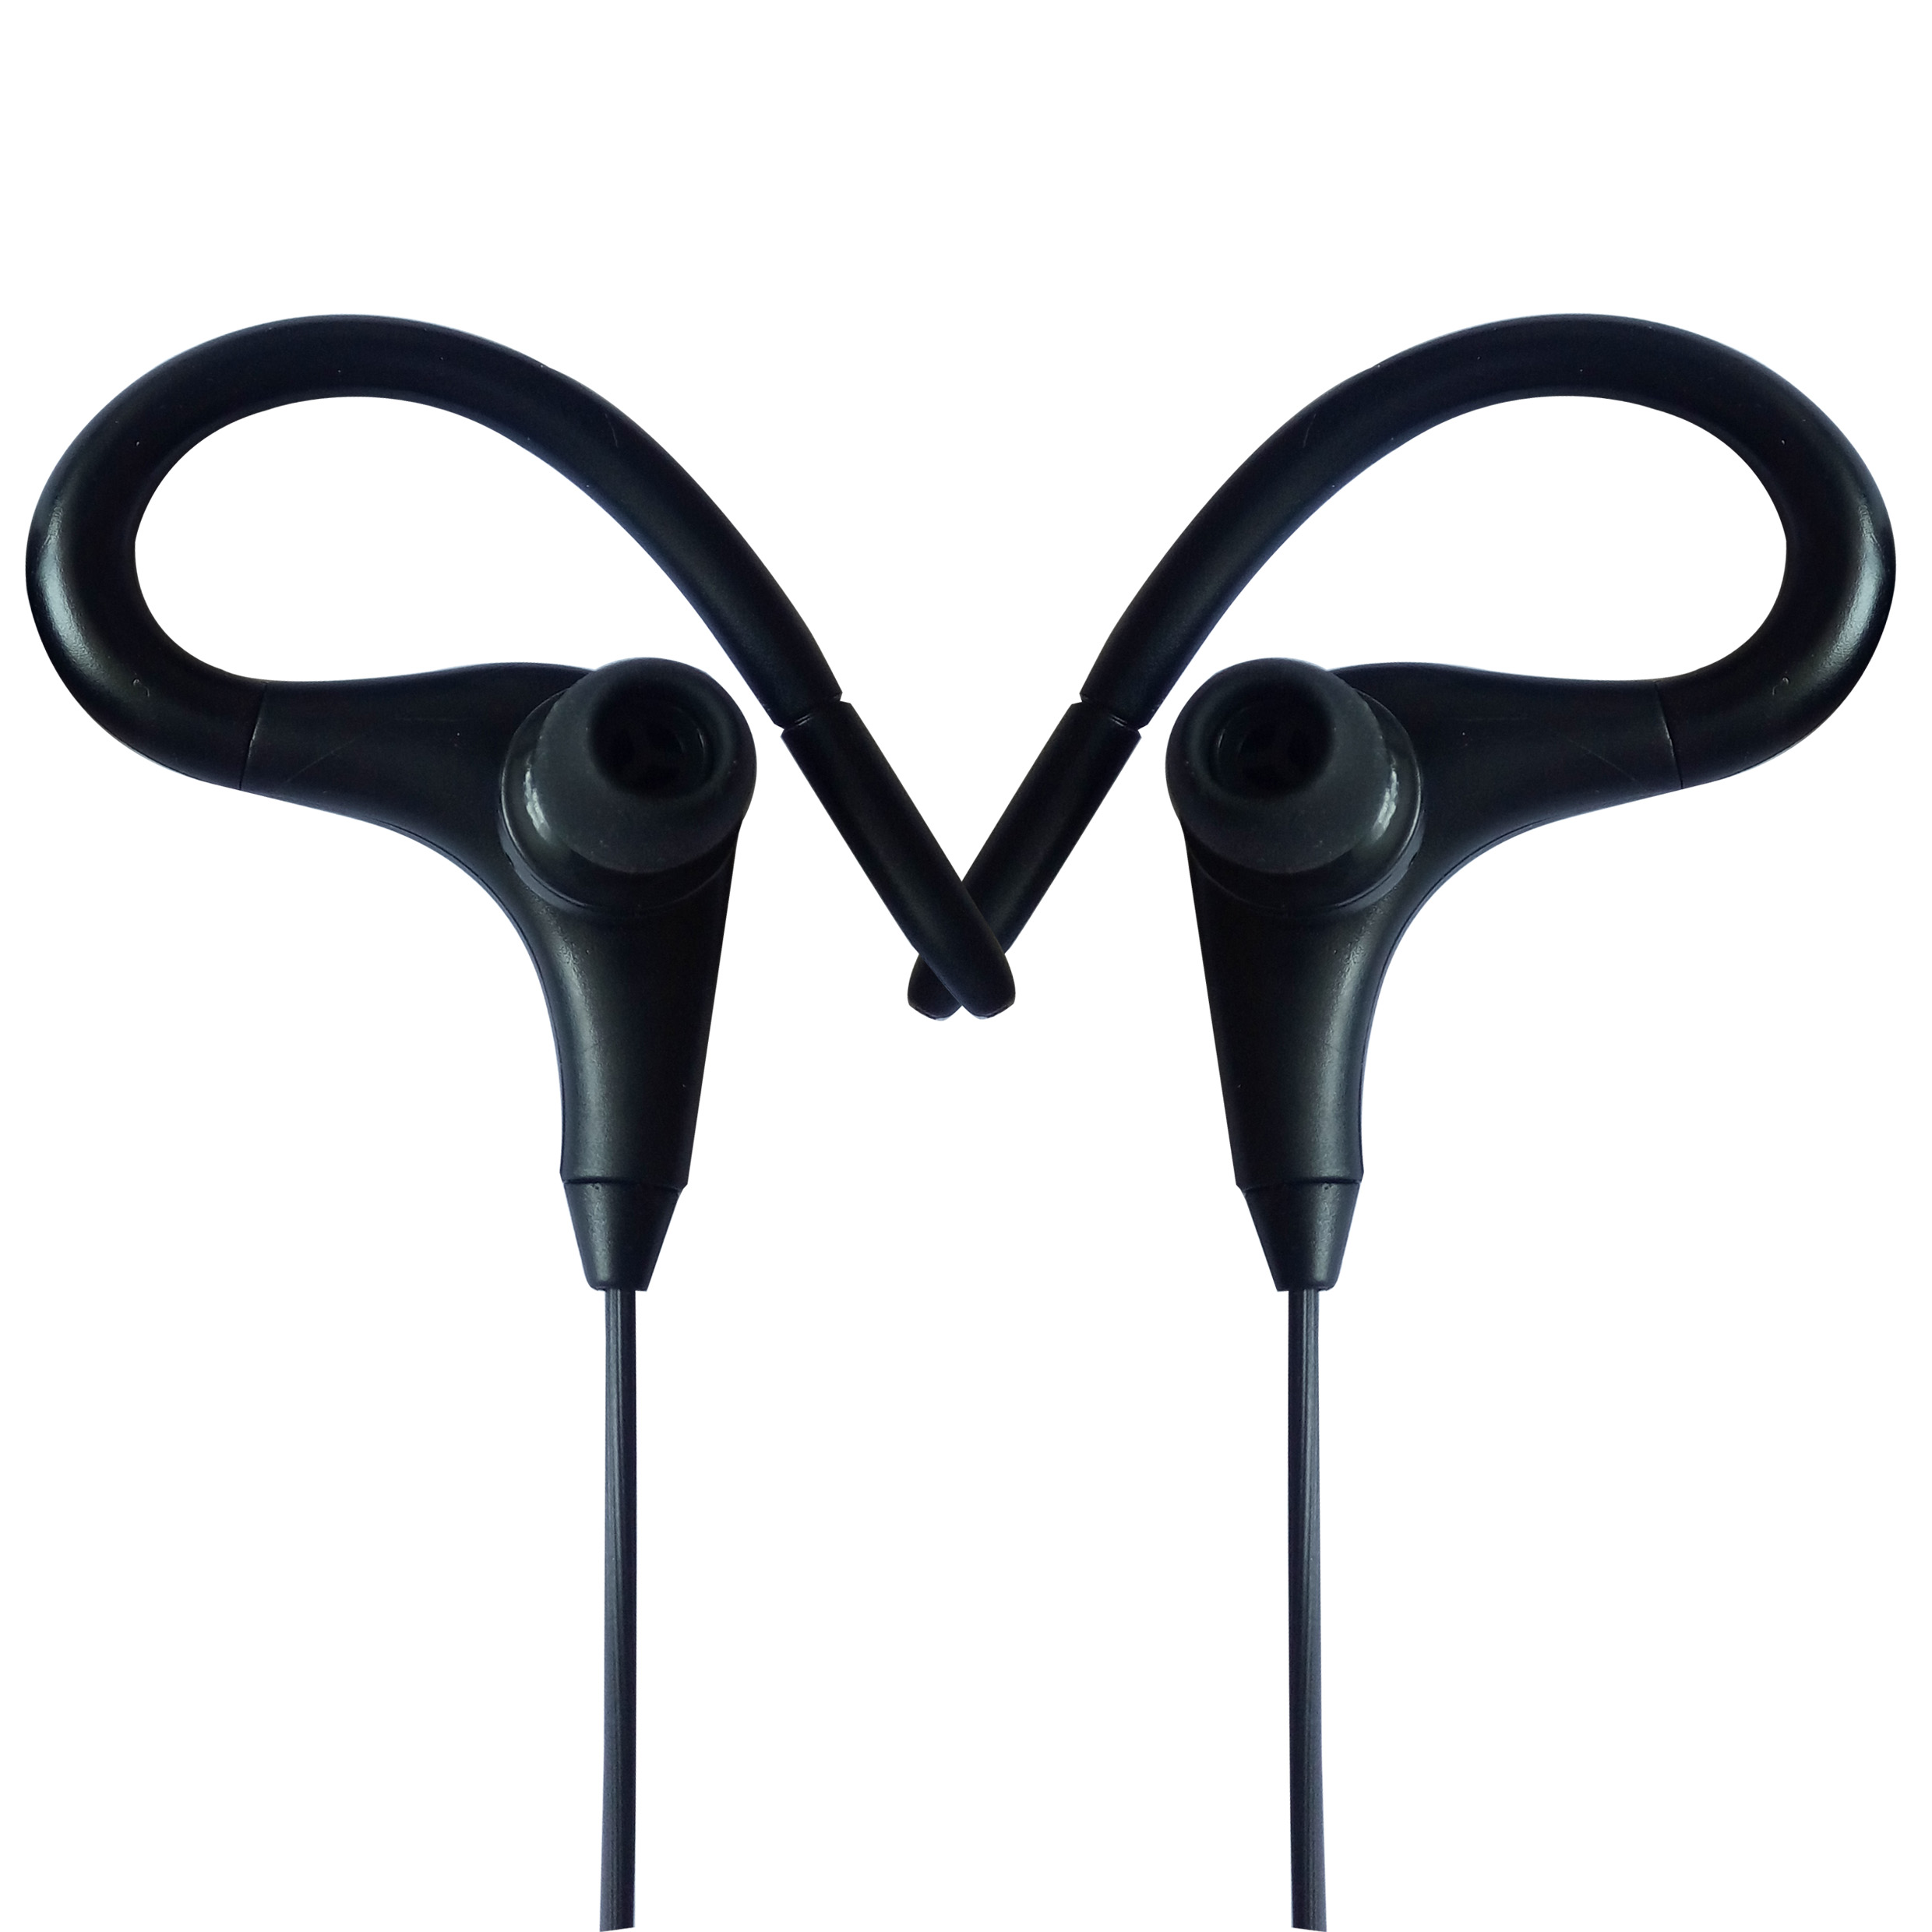 挂耳式运耳耳机深圳OEM耳机工厂耳机贴牌来样来图订做生产图片